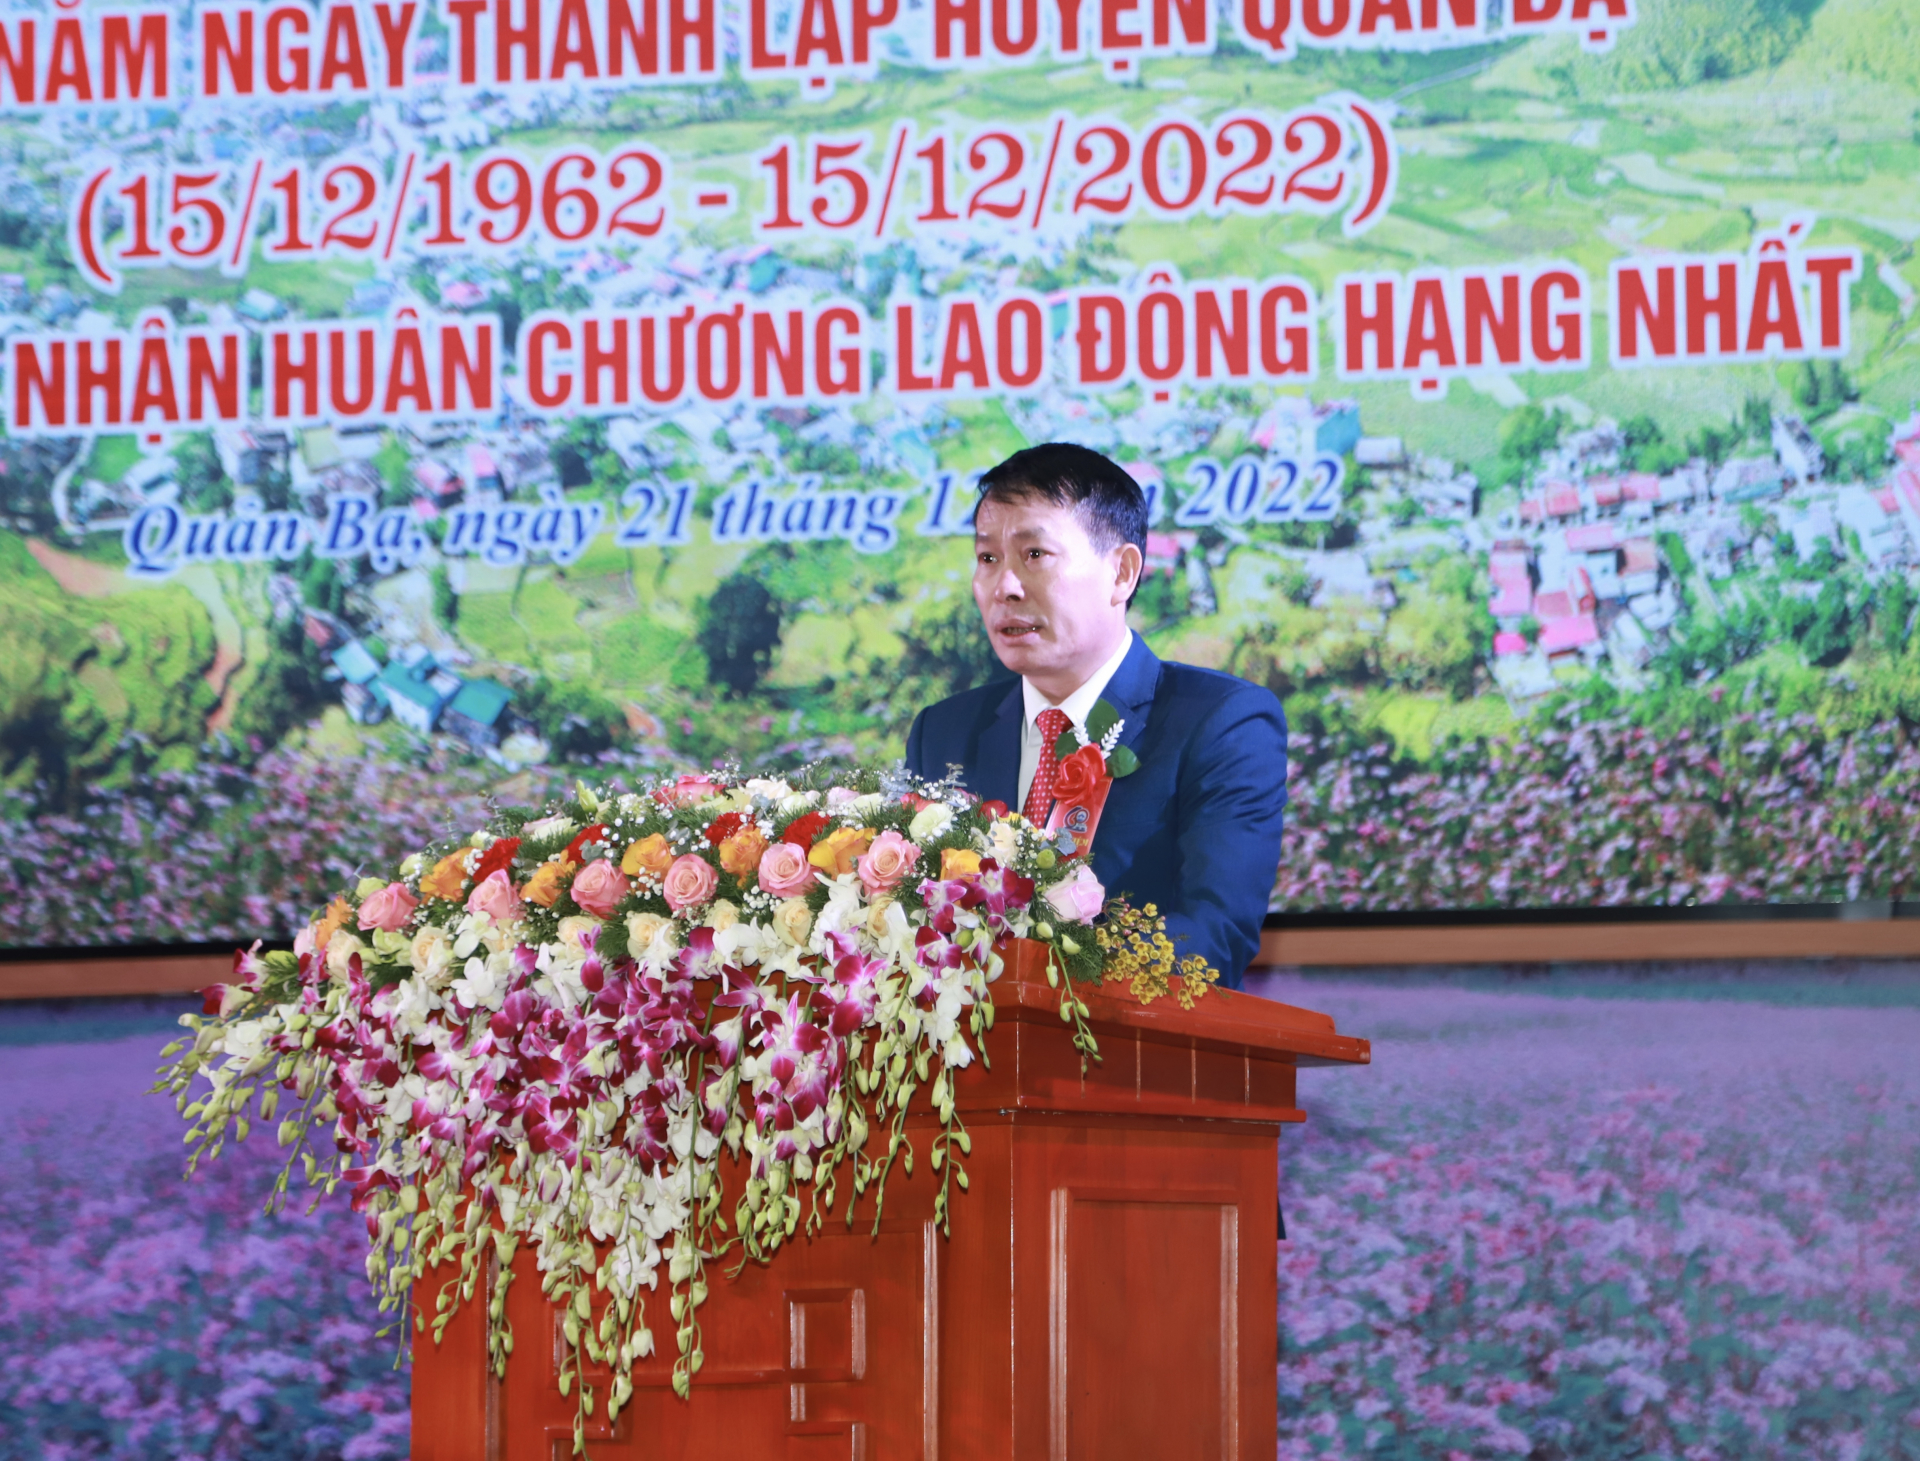 Bí thư Huyện ủy Quản Bạ Đỗ Văn Hùng trình bày diễn văn tại lễ kỷ niệm